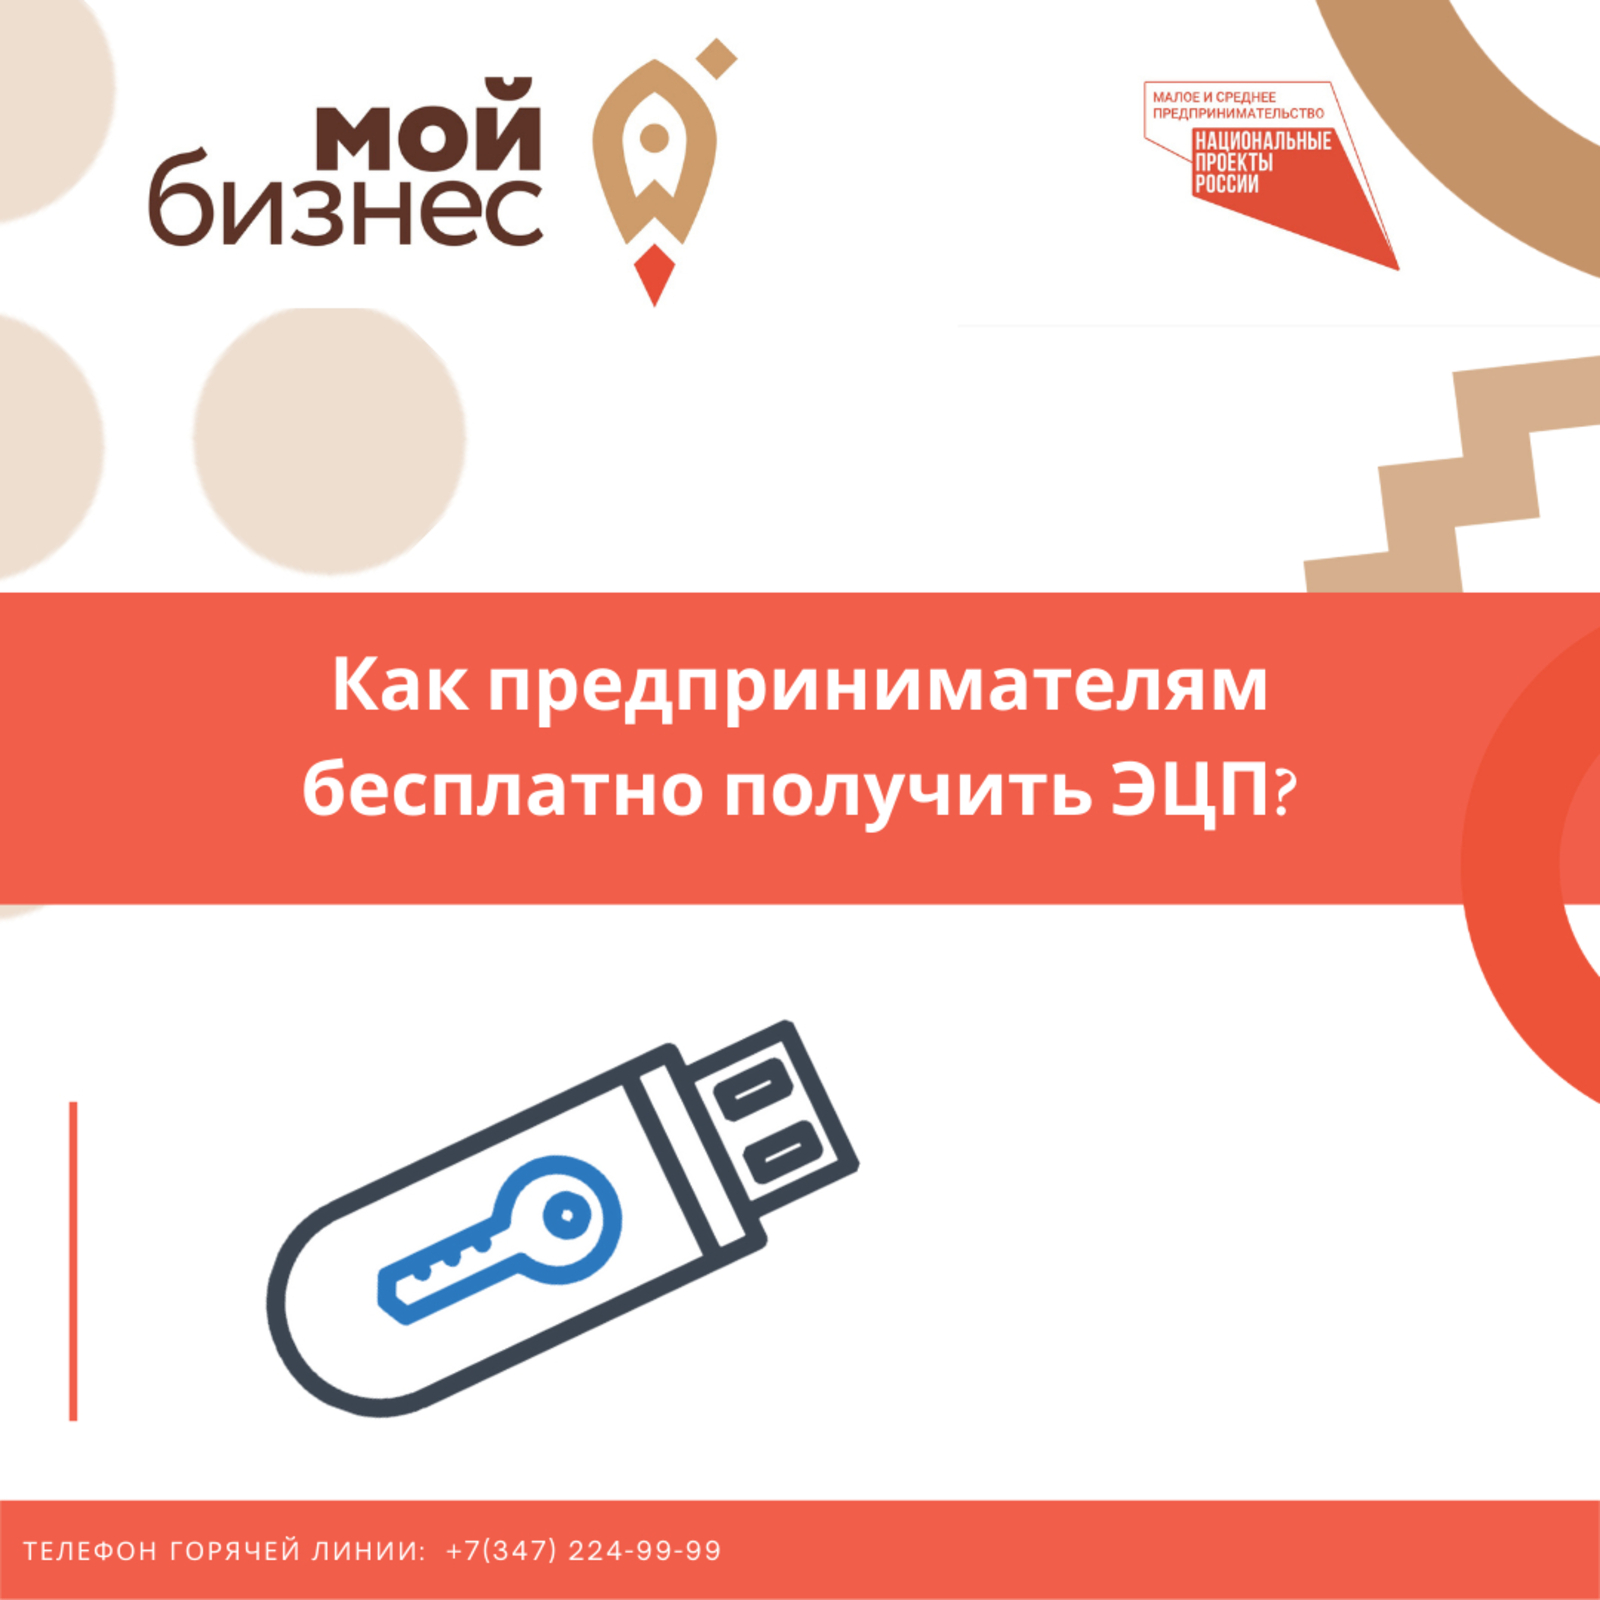 В Башкортостане стало возможным бесплатно получить электронную цифровую подпись в рамках нацпроекта по предпринимательству